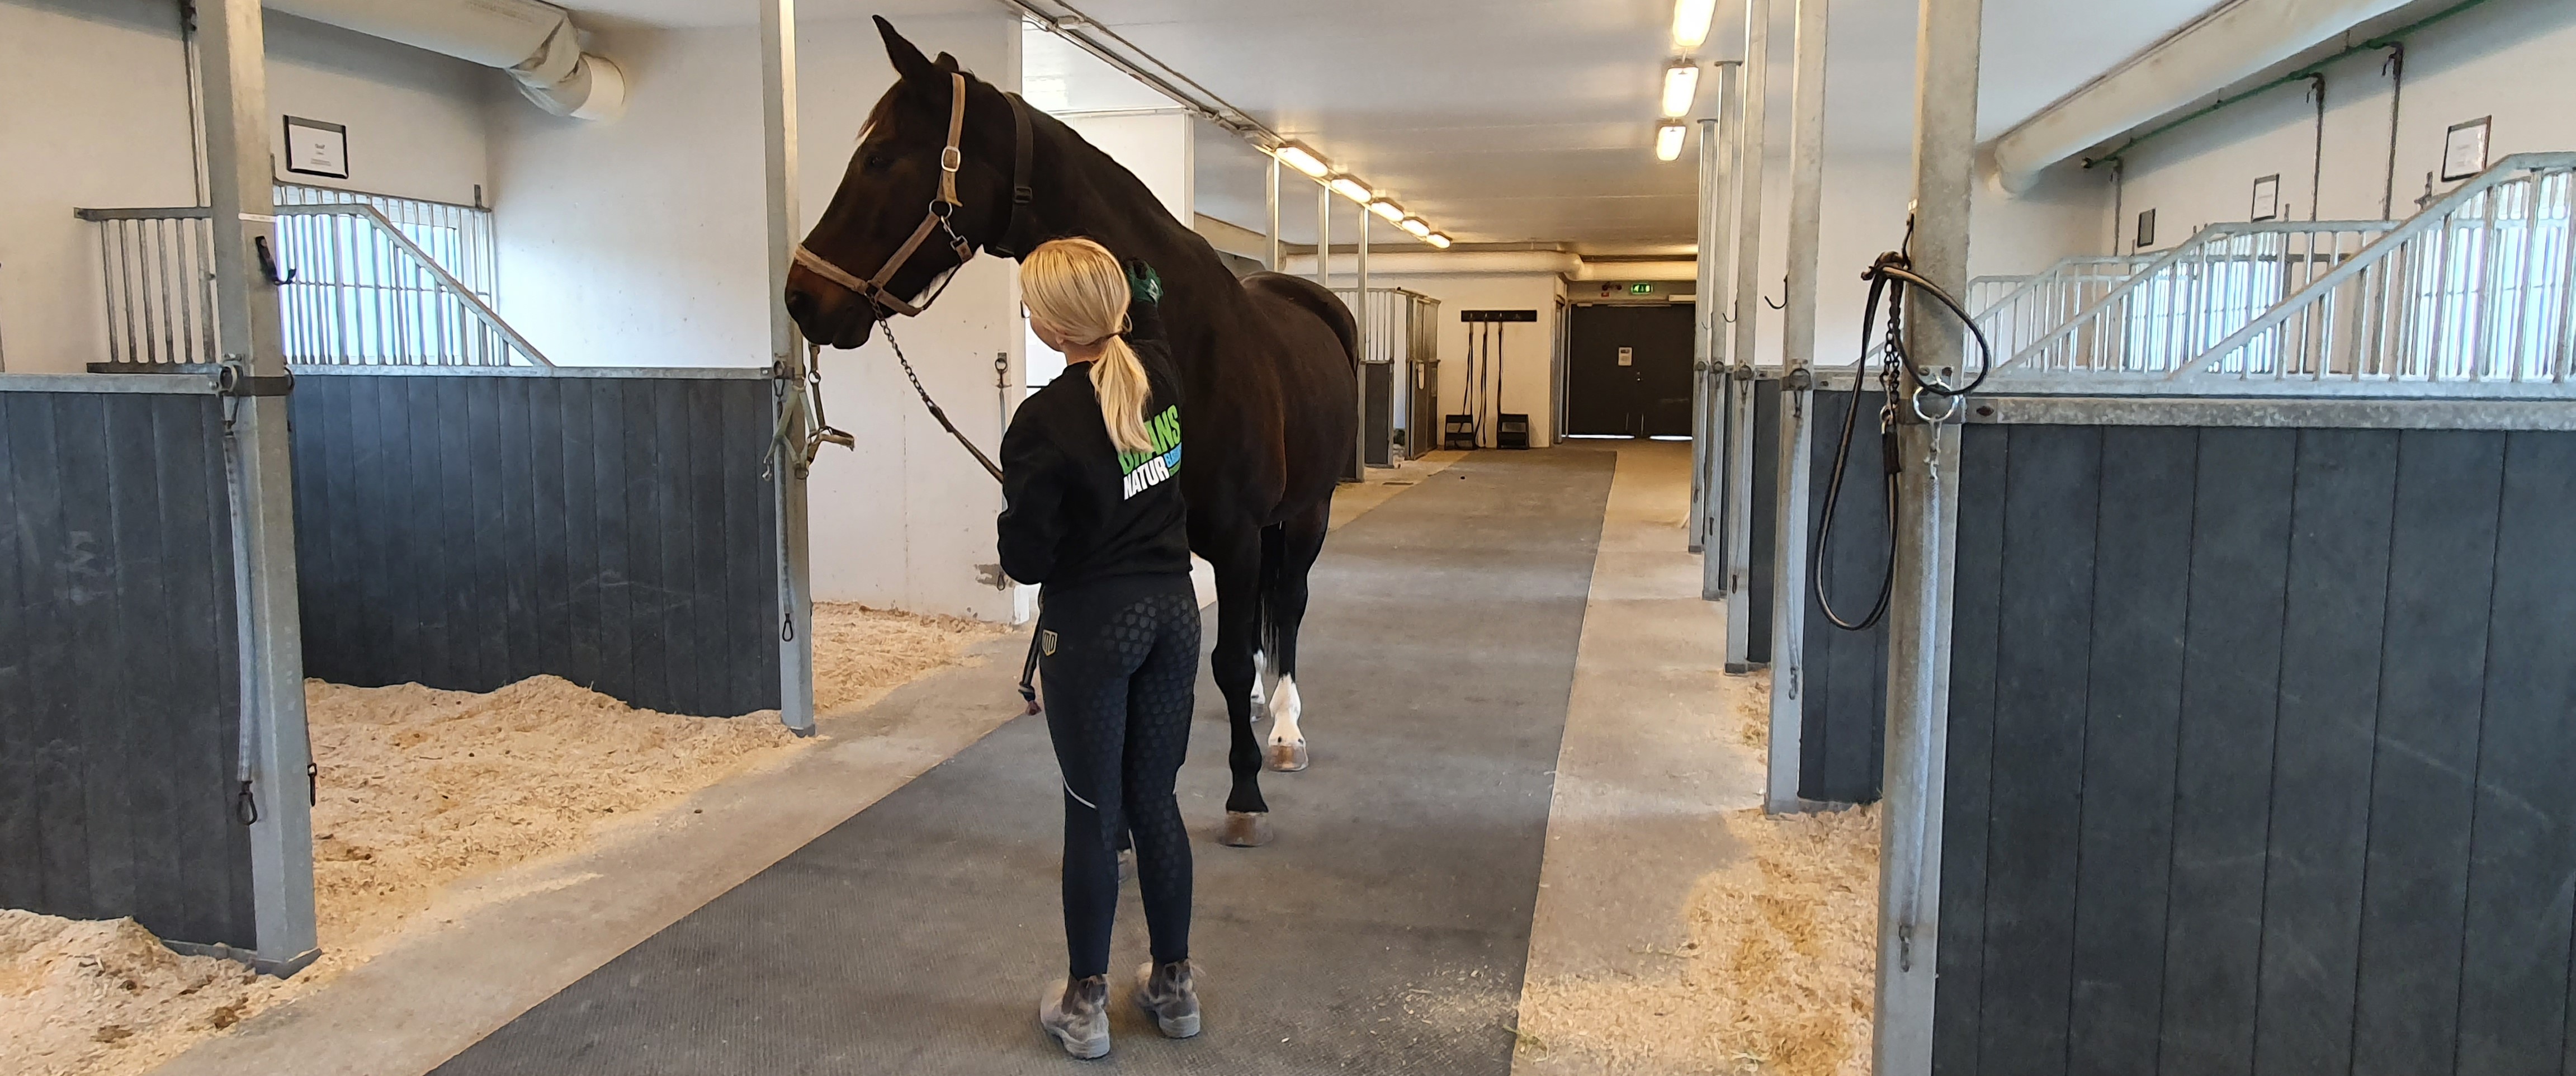 Grans Naturbruksgymnasium tillsammans med Piteå ridklubb utbildar framtidens hästskötare!